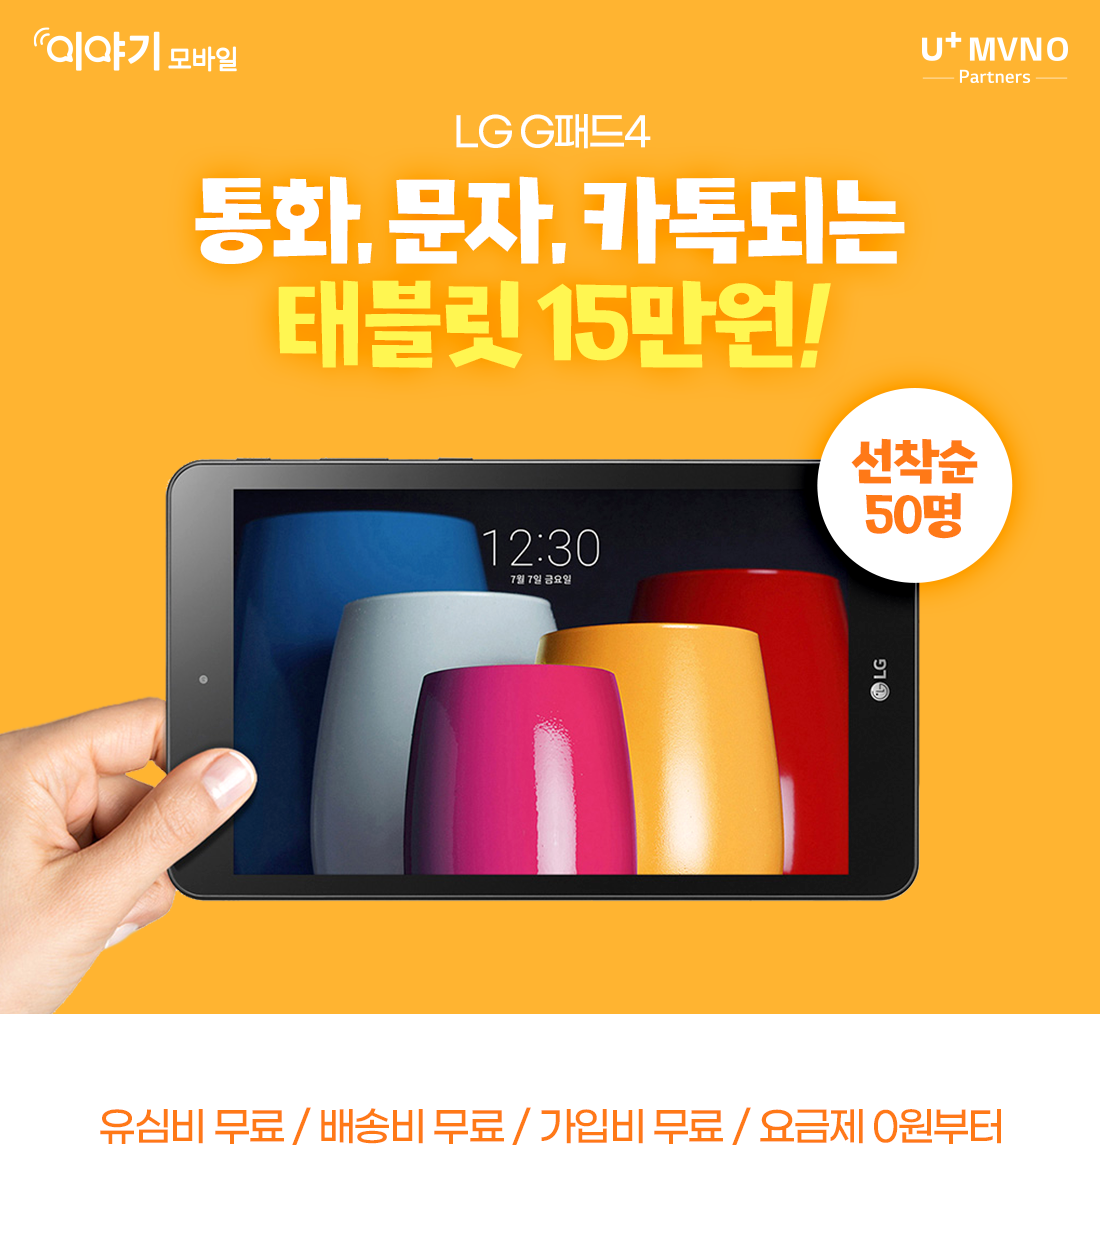 LG G패드4 통화,문자,카톡되는 태블릿 15만원! 배송비 무료/가입비 무료/유심비 무료